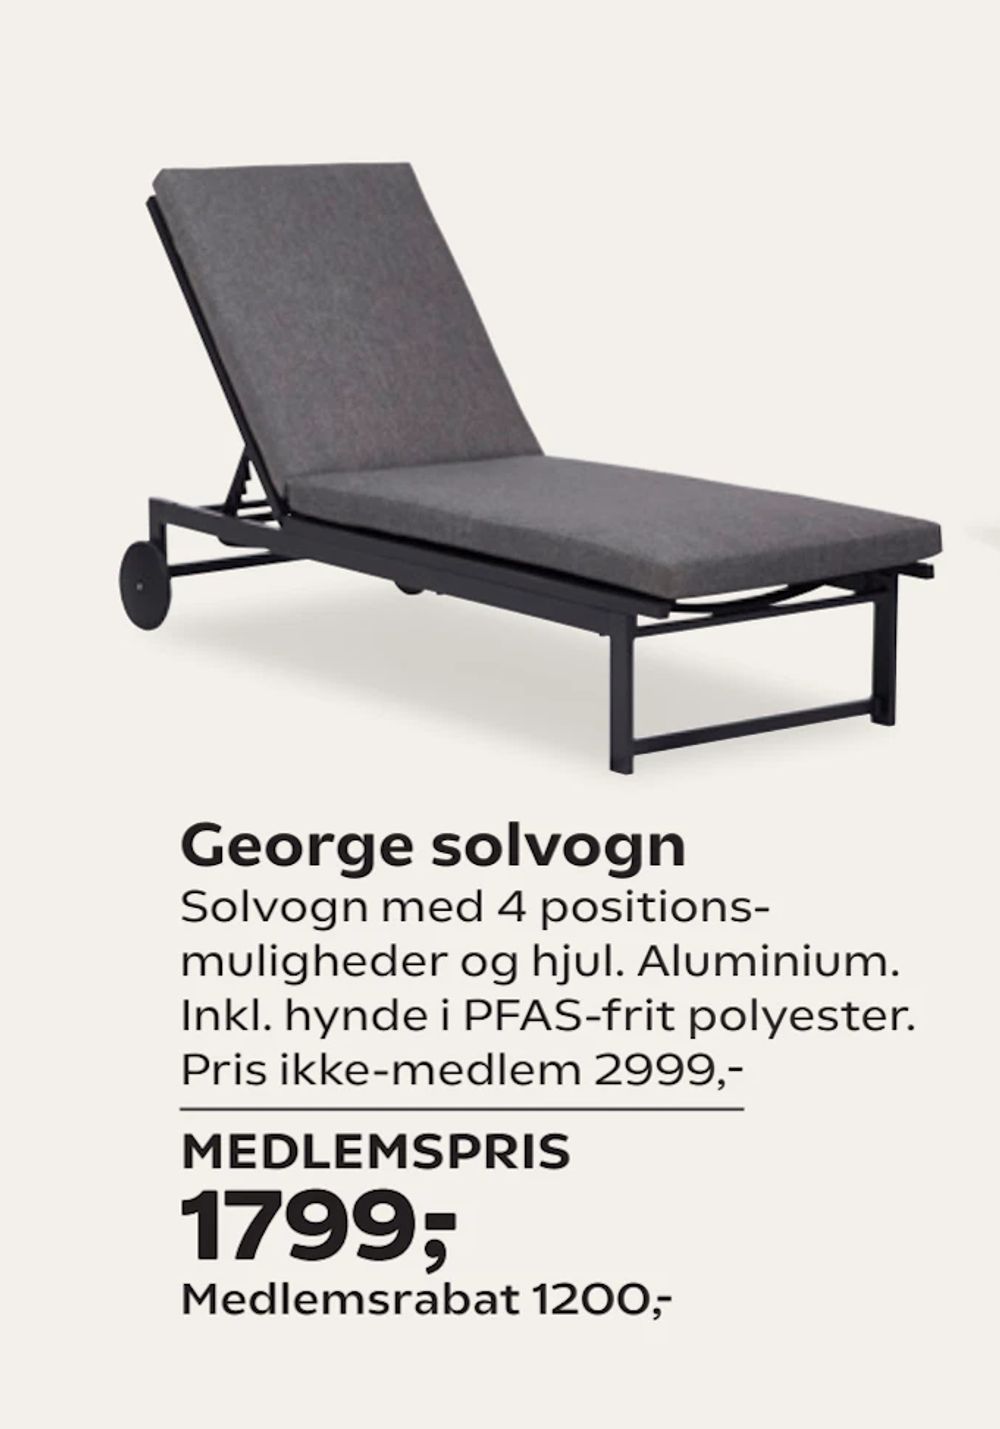 Tilbud på George solvogn fra Coop.dk til 2.999 kr.